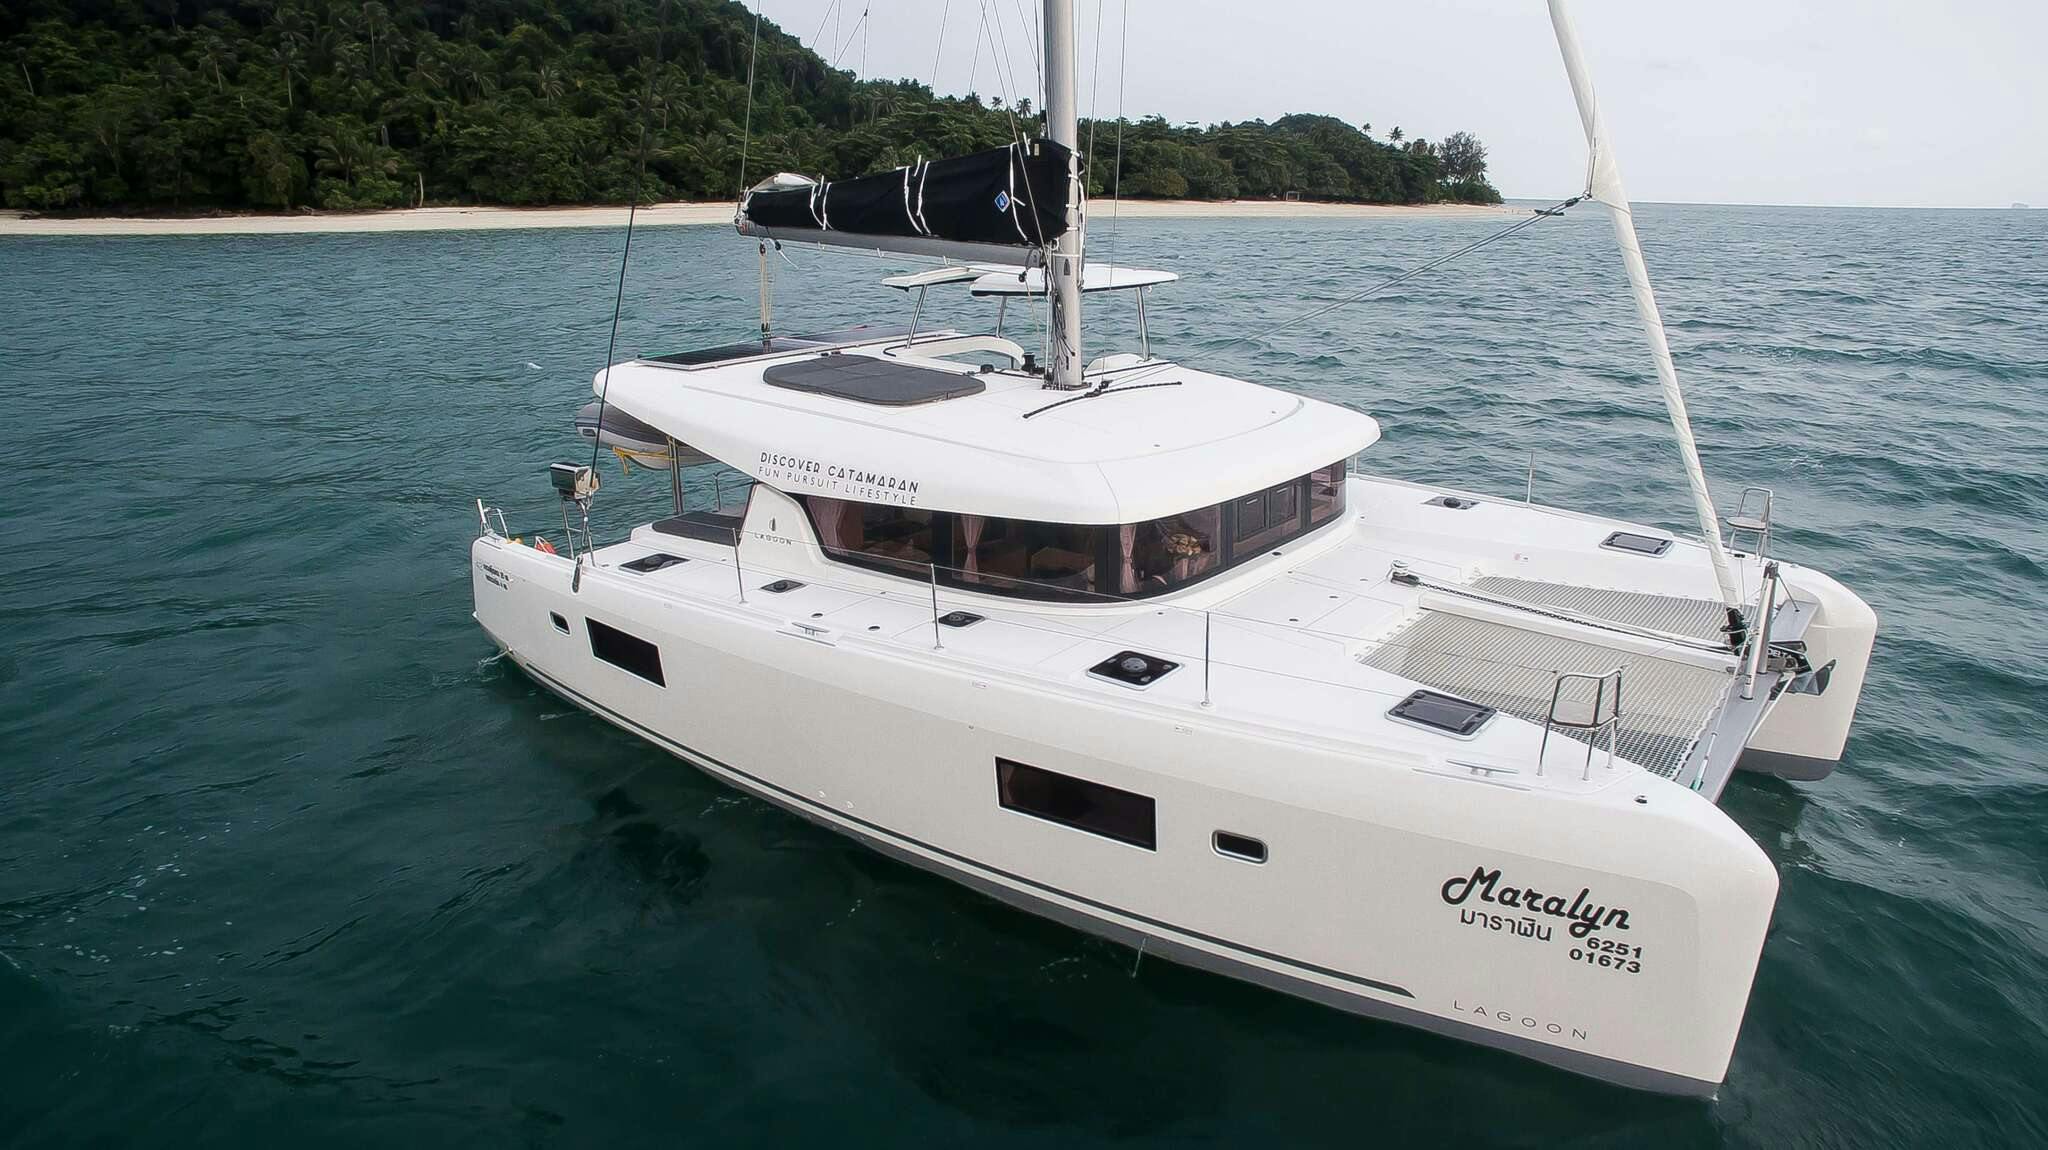 Lagoon 42 - Yacht Charter Thailand & Boat hire in Thailand Phuket Ao Po Grand Marina 1